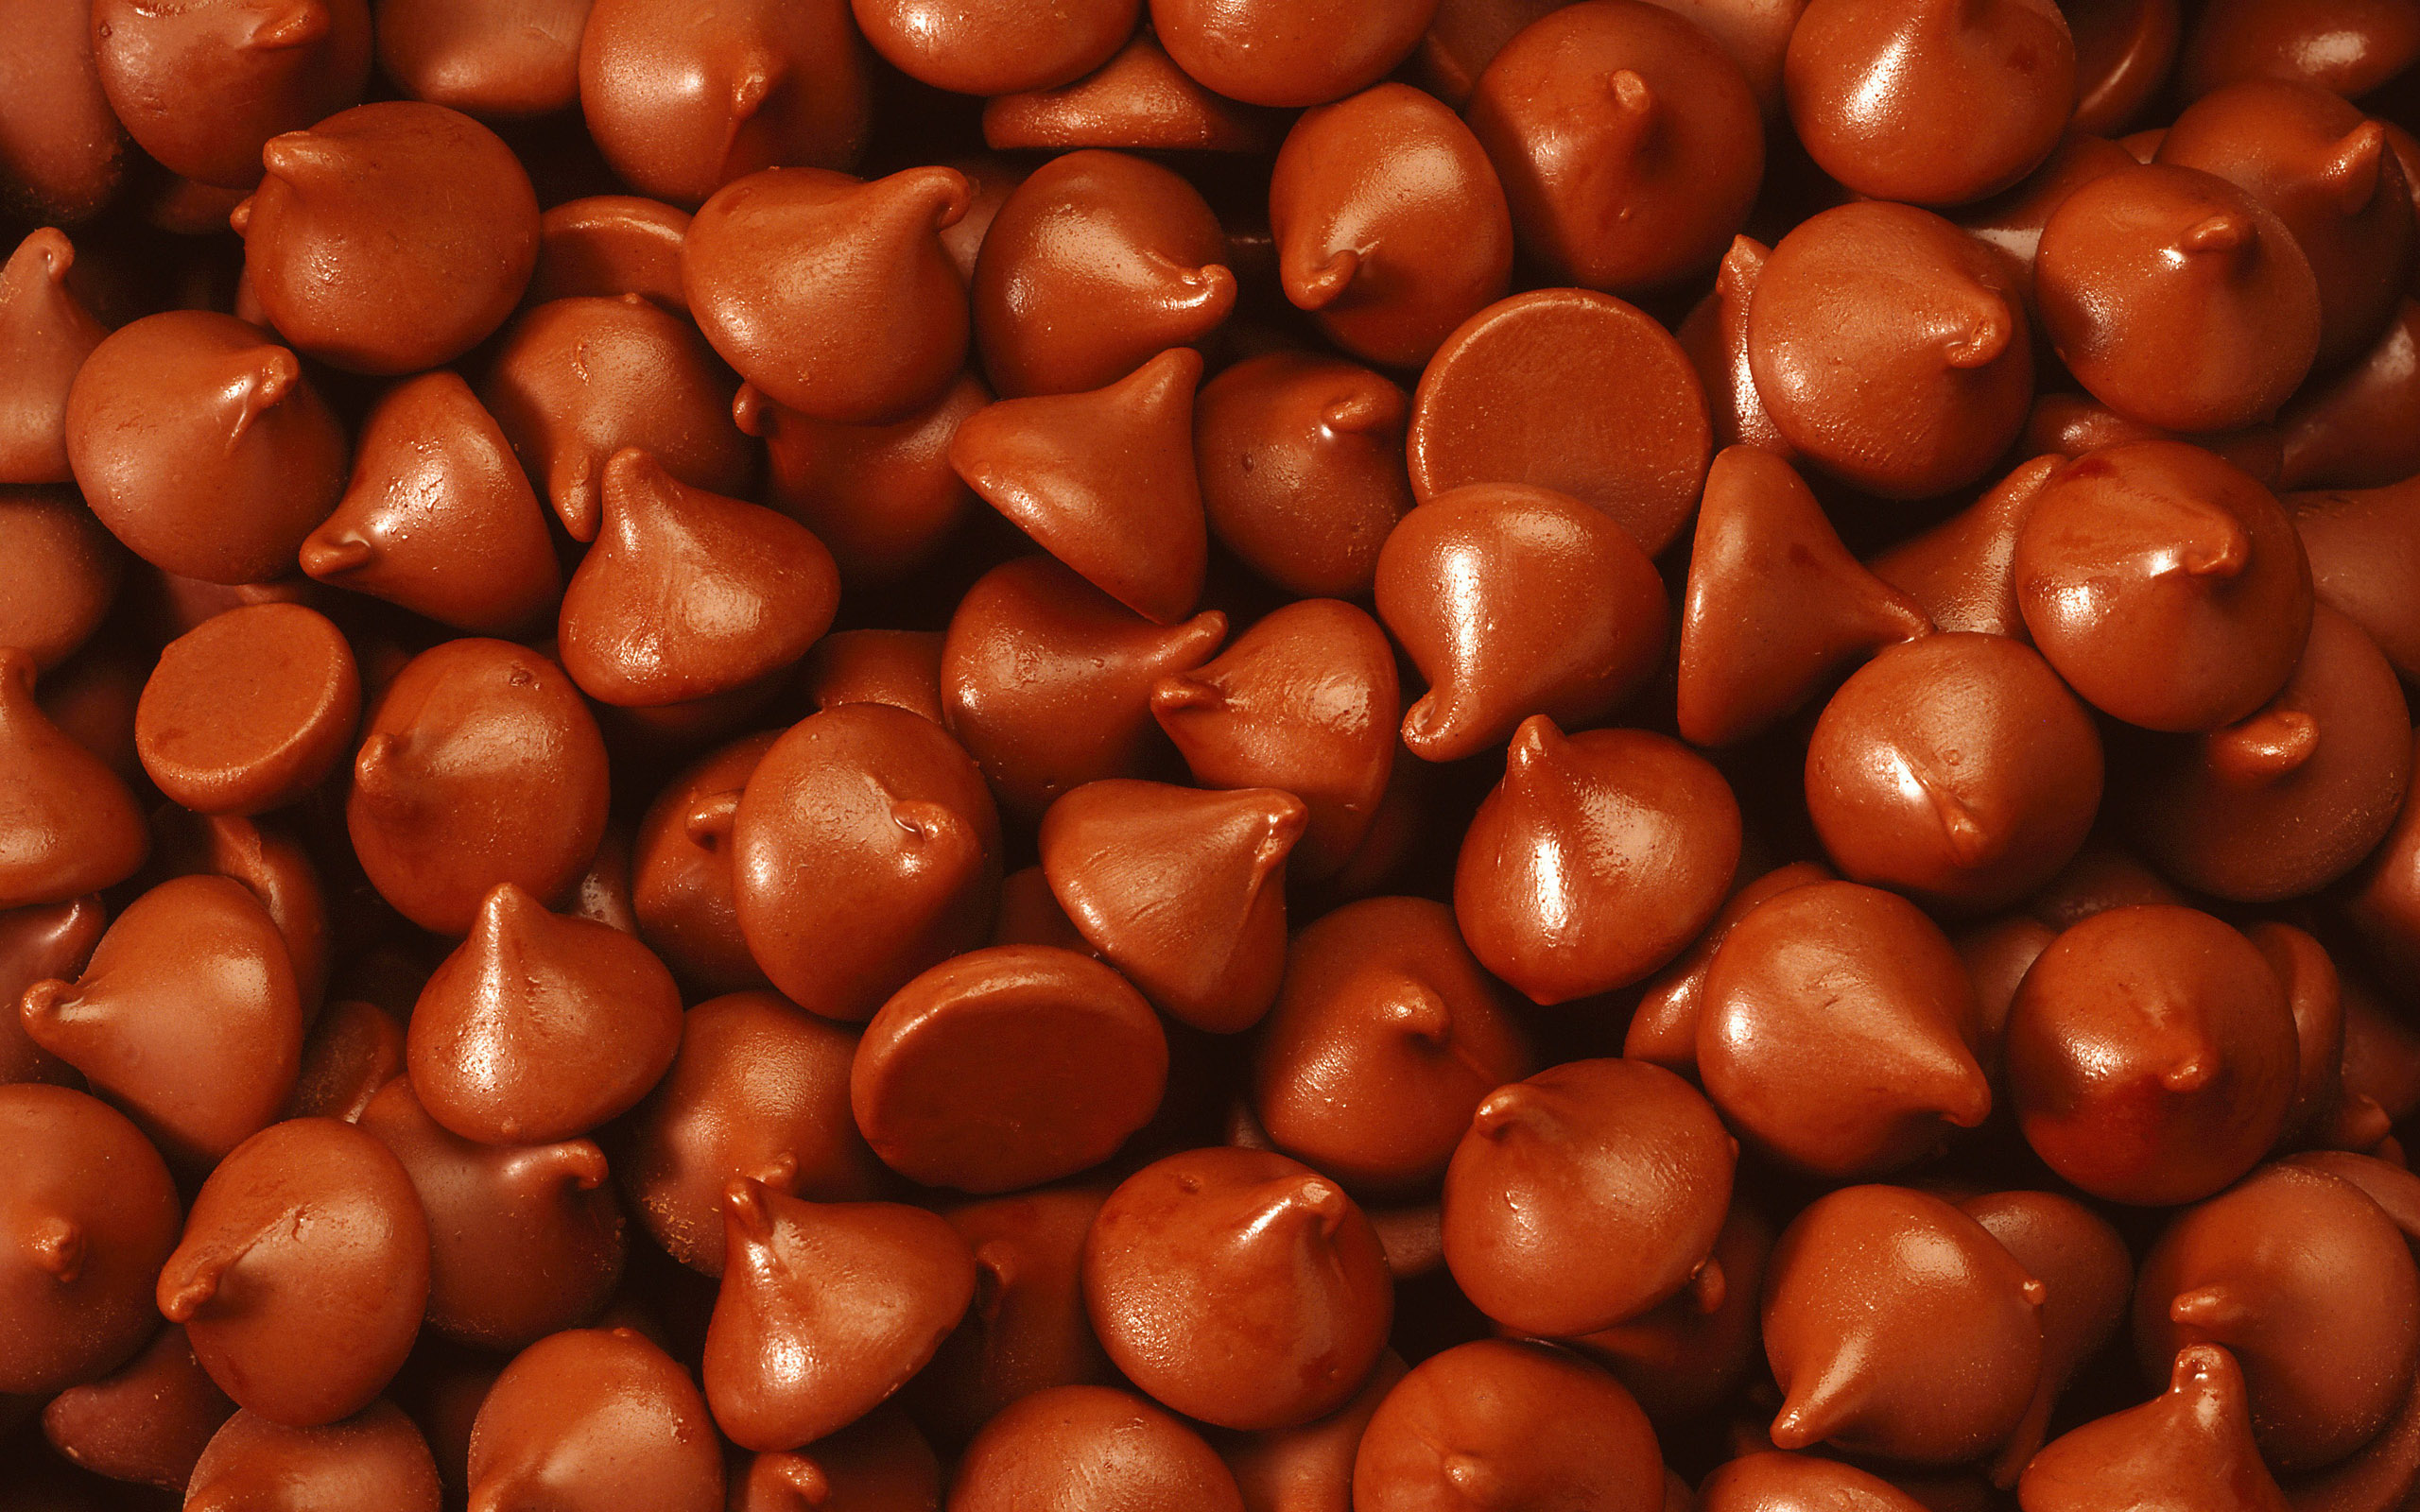 Шоколадный фон